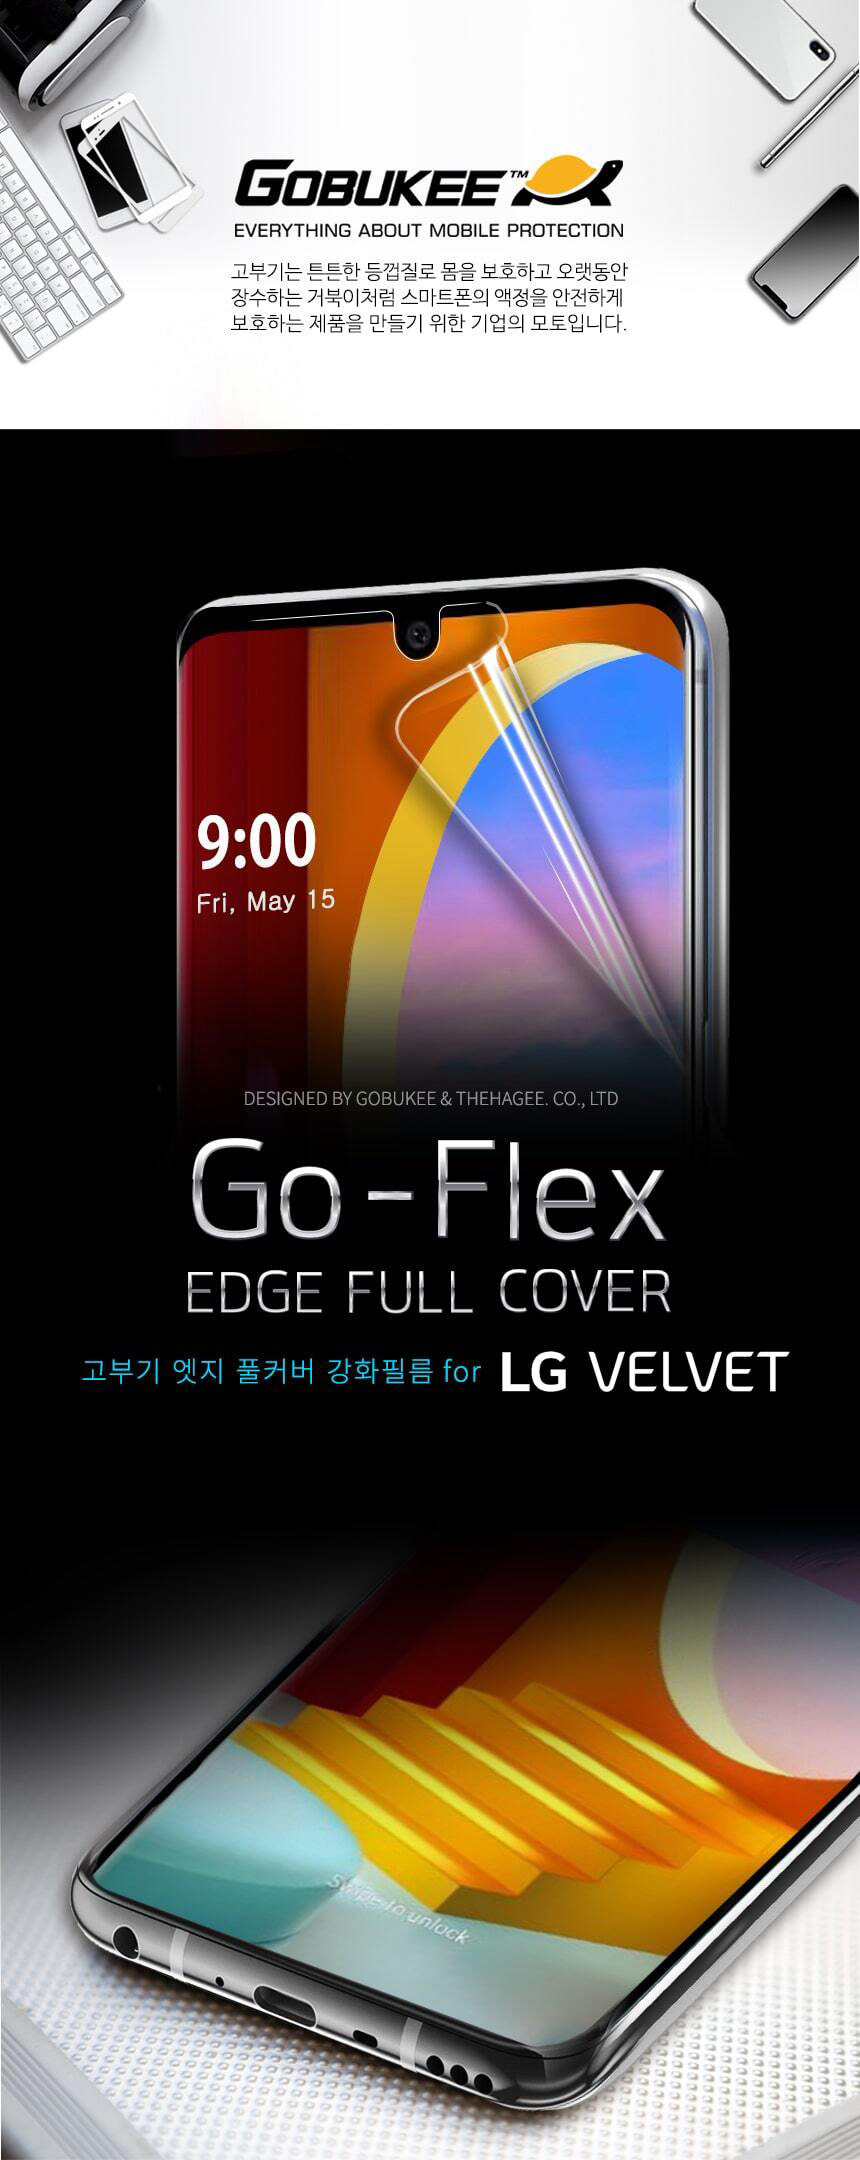 LG-velvet-Go-Flex-film-pageV1_01.jpg